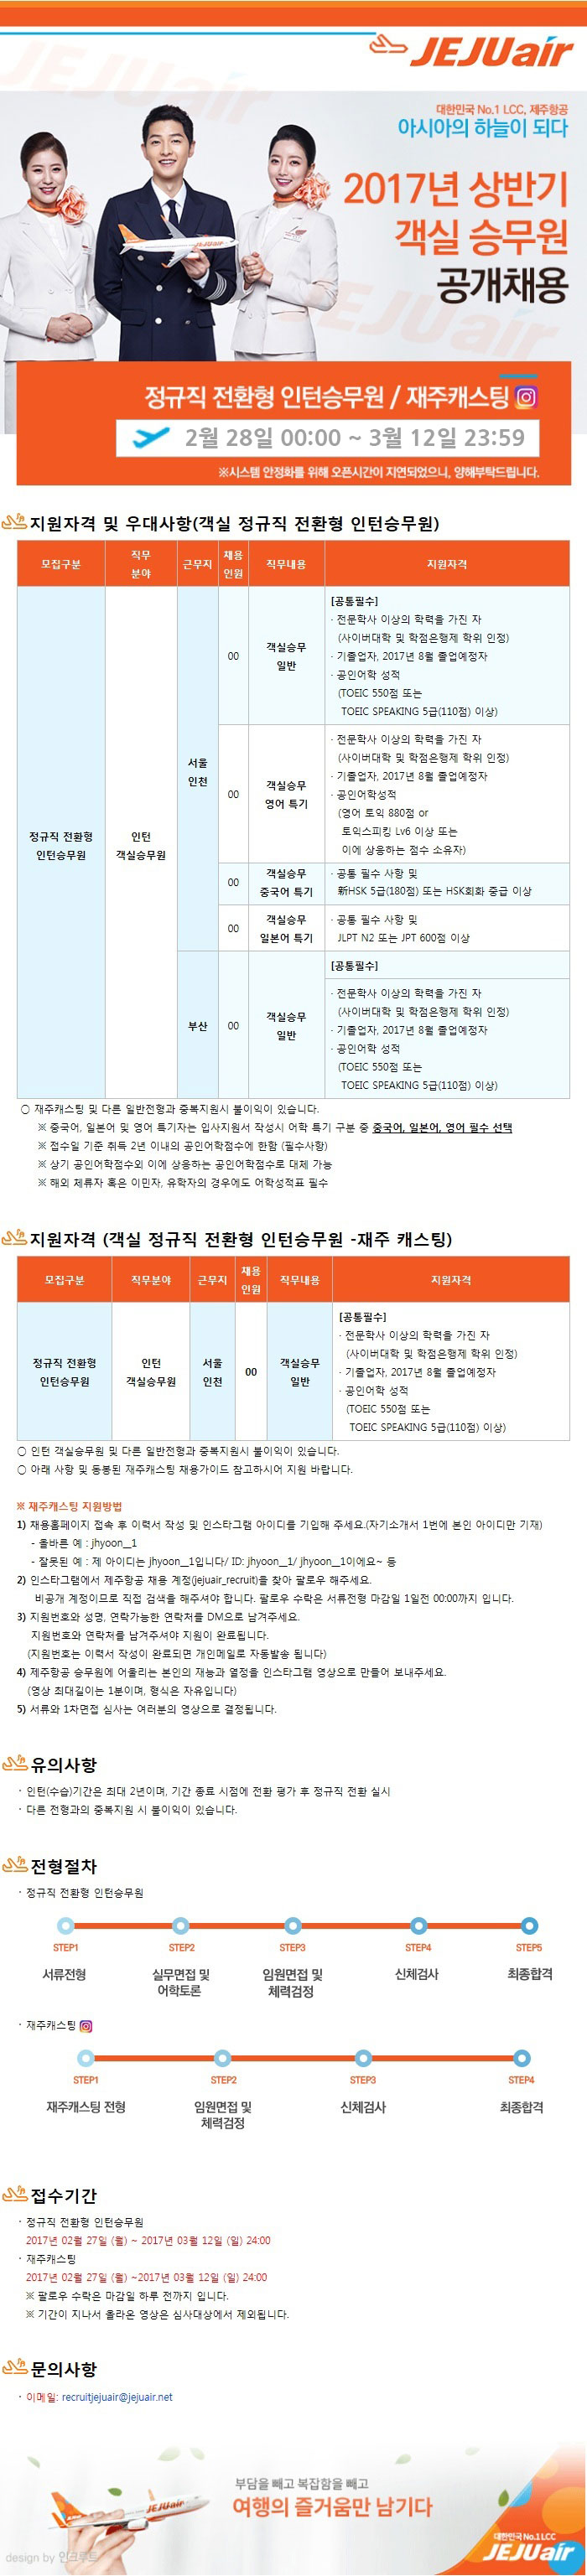 2017년 상반기 객실 승무원 공개채용